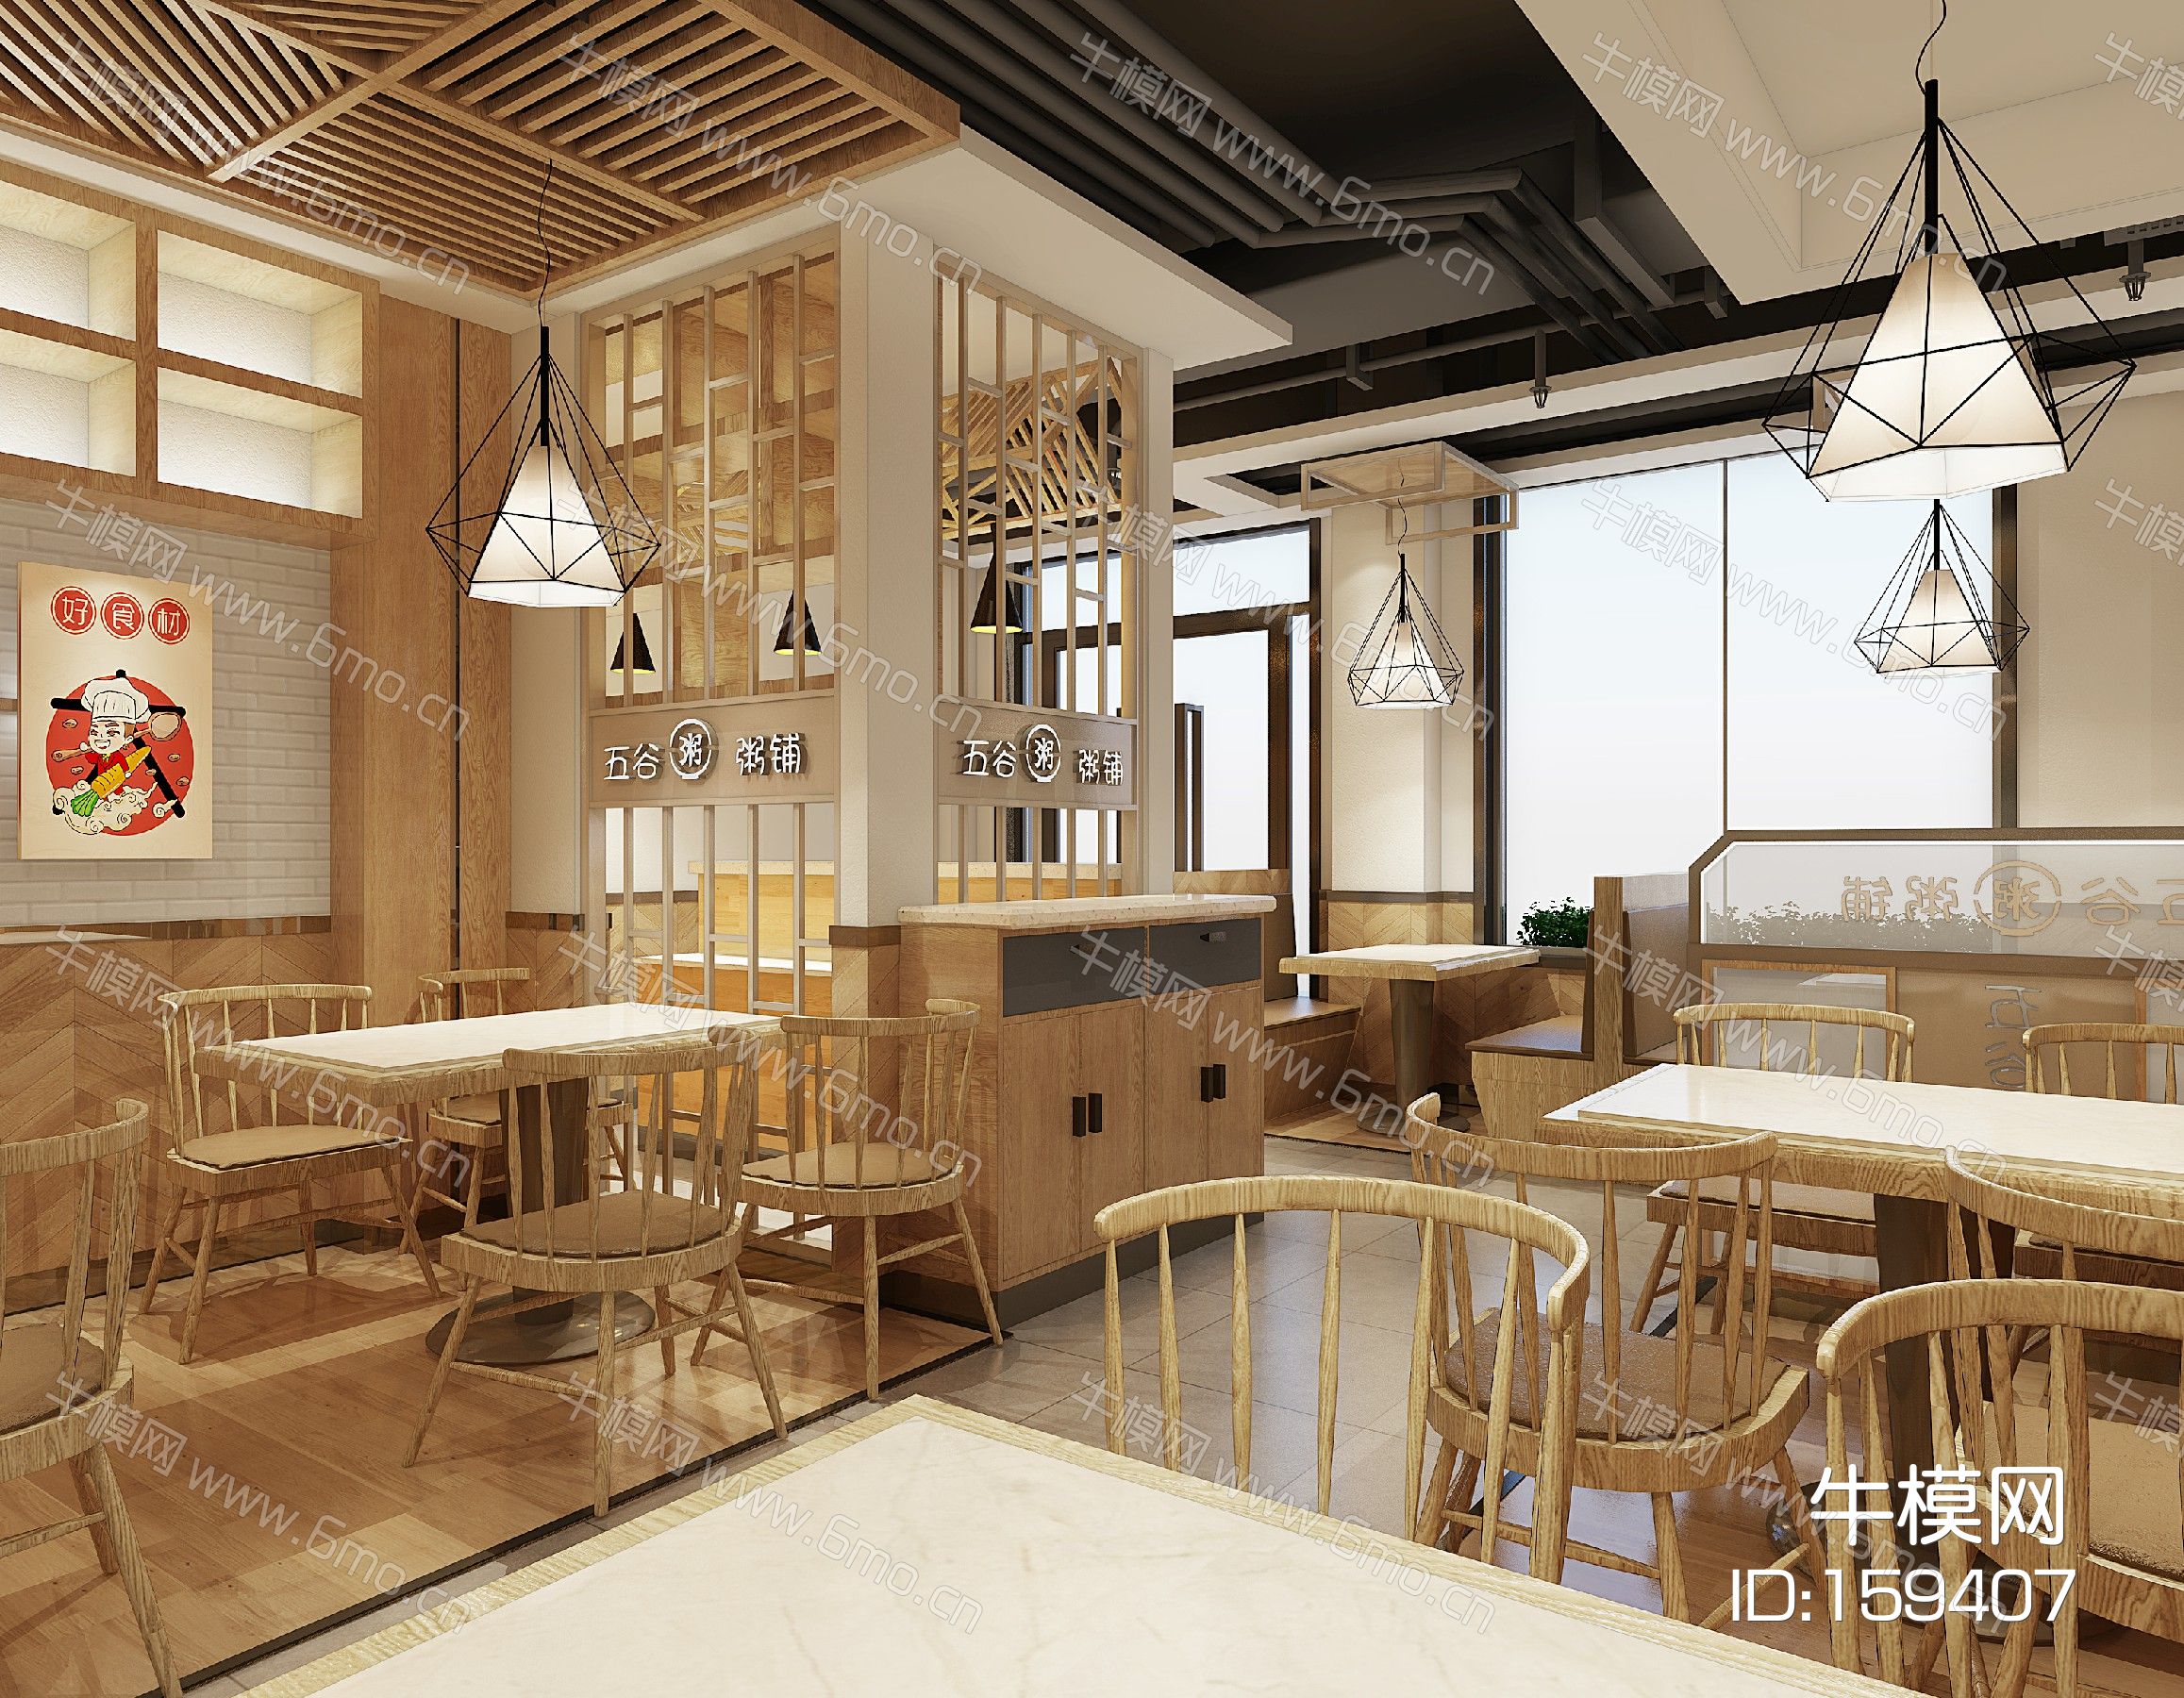 新中式粥铺餐厅小吃店